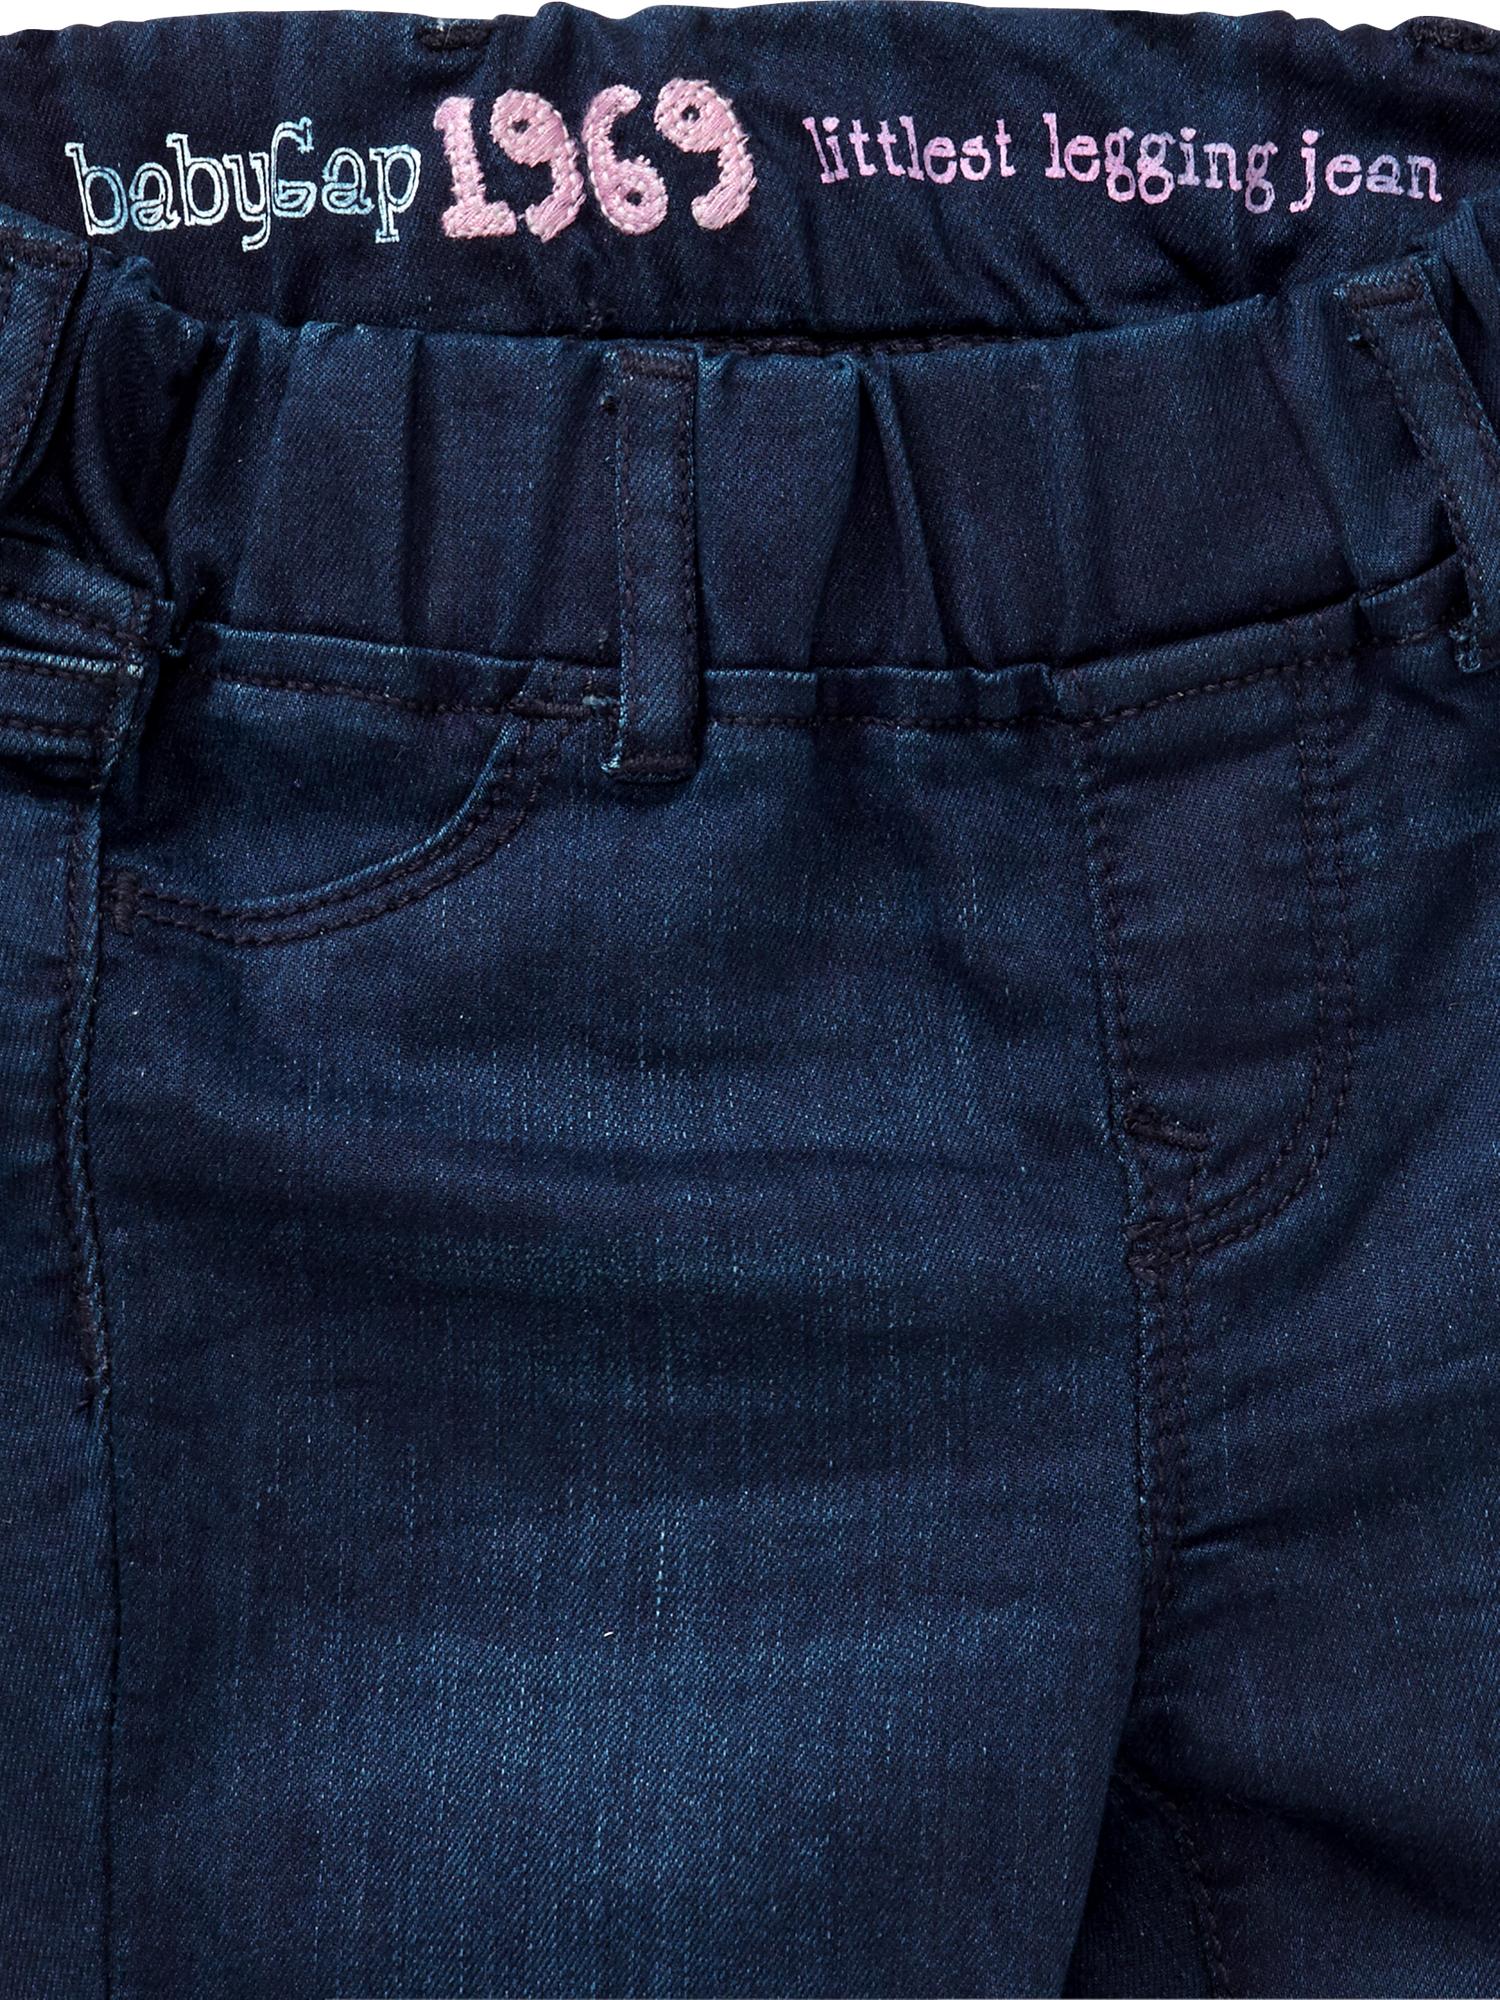 Compre Jeans skinny falso denim jeggings leggings calças finas